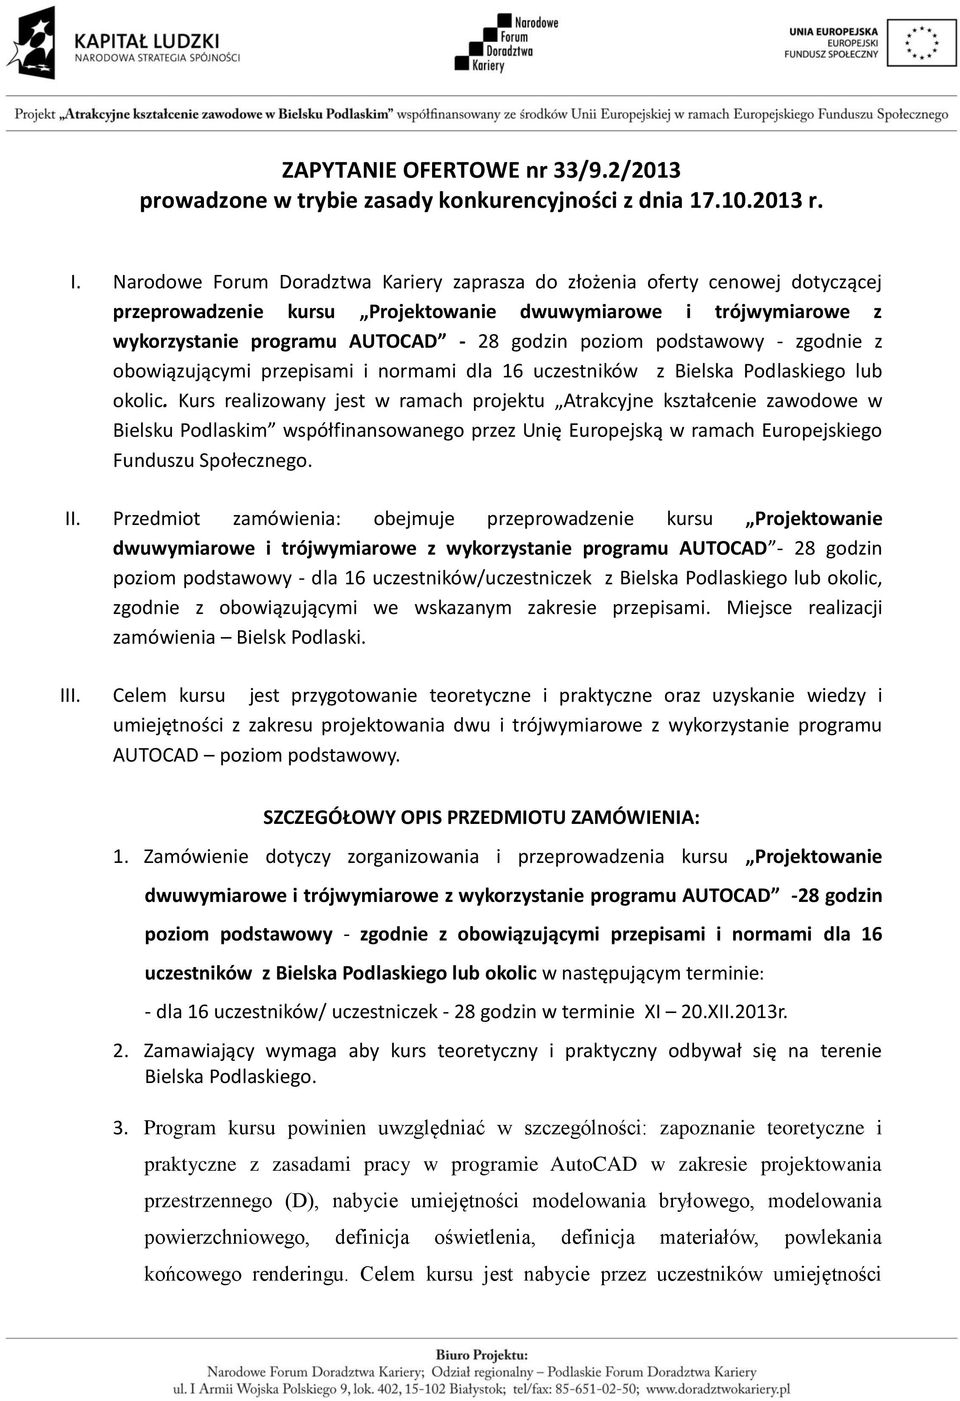 podstawowy - zgodnie z obowiązującymi przepisami i normami dla 16 uczestników z Bielska Podlaskiego lub okolic.